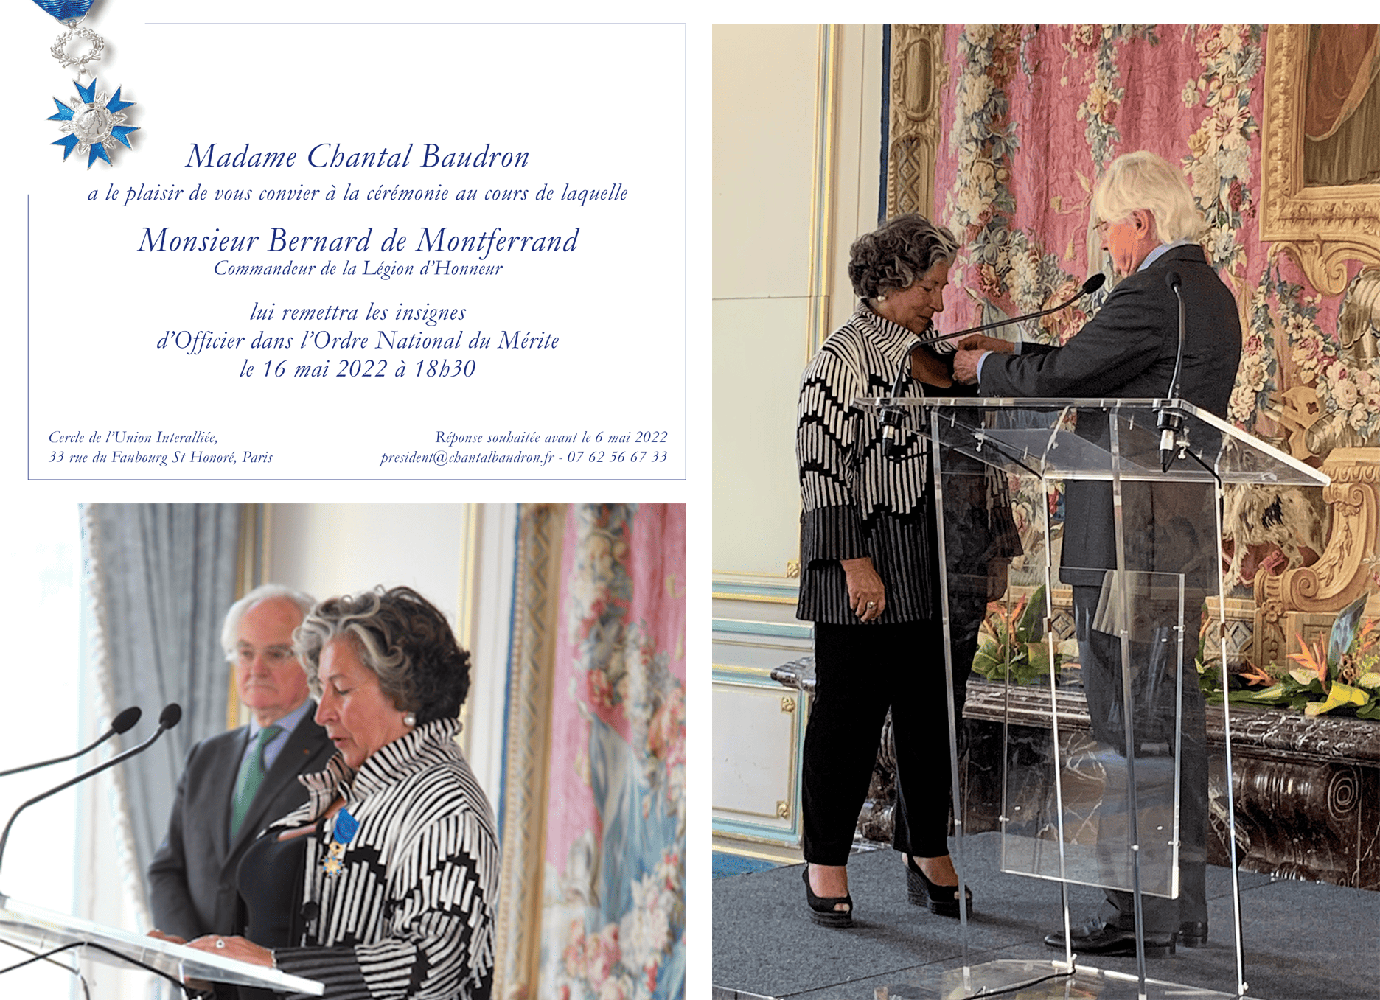 Chantal Baudron reçoit les insignes d’Officier dans l’Ordre National du Mérite